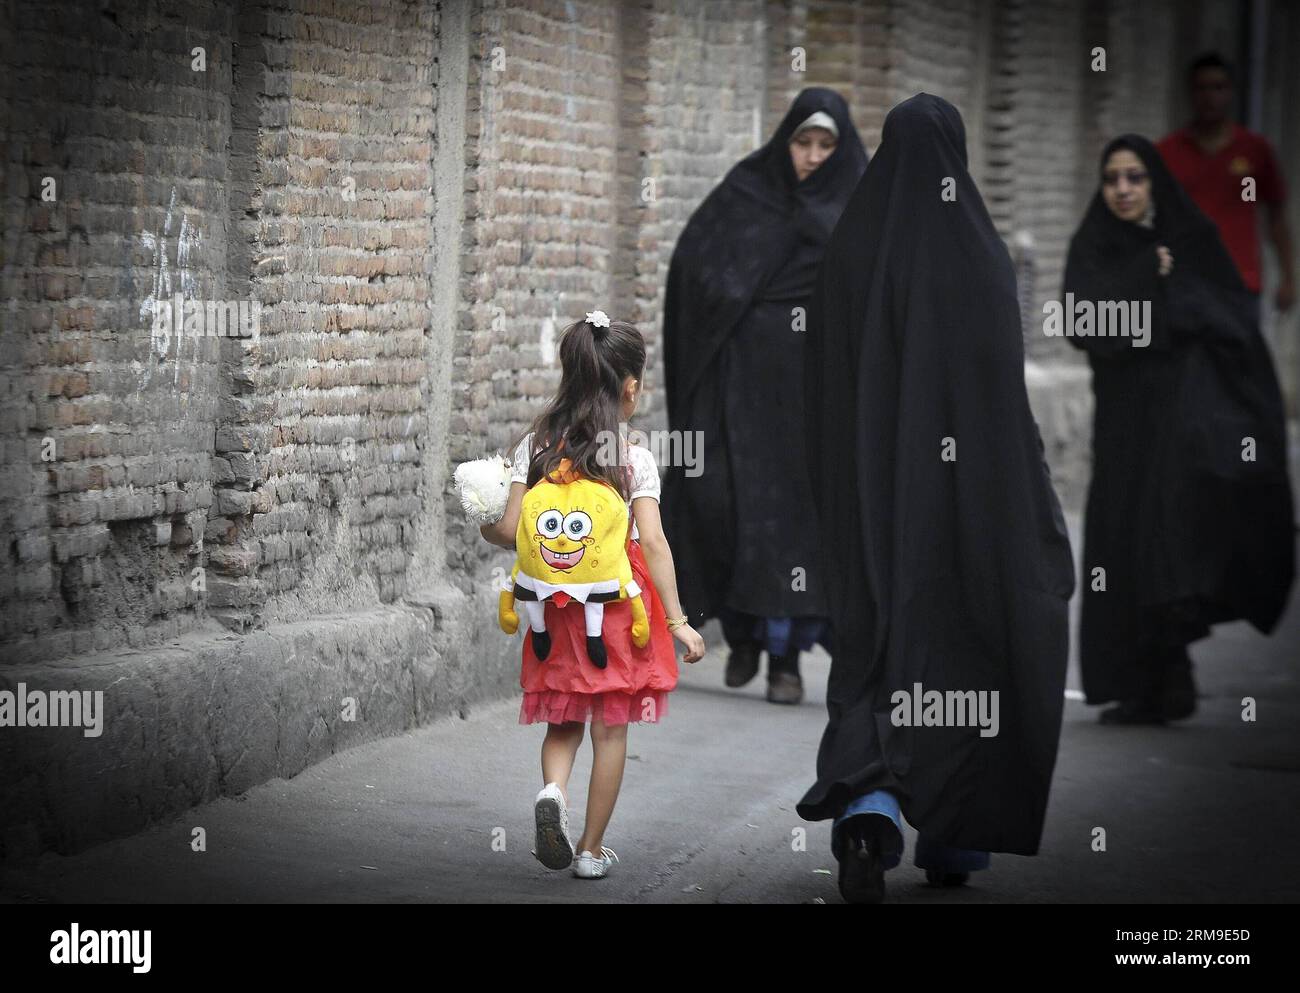 (140520) -- TÉHÉRAN, 20 mai 2014 (Xinhua) -- des femmes vêtues de chador marchent dans une rue de Téhéran, capitale de l'Iran, le 19 mai 2014. Chador est une sorte de hijab formel pour de nombreuses femmes en Iran dans les lieux publics. Le hijab, une couverture des cheveux et du corps pour les femmes, a été rendu public après la révolution islamique en Iran en 1979. (Xinhua/Ahmad Halabisaz)(zhf) IRAN-TEHRAN-WOMEN-HIJAB PUBLICATIONxNOTxINxCHN TEHRAN Mai 20 2014 XINHUA femmes vêtues de Chador marcher DANS une rue à TÉHÉRAN capitale de l'Iran Mai 19 2014 Chador EST un enfant du hijab formel pour BEAUCOUP DE femmes en Iran dans les lieux publics hijab une couverture DE cheveux Banque D'Images